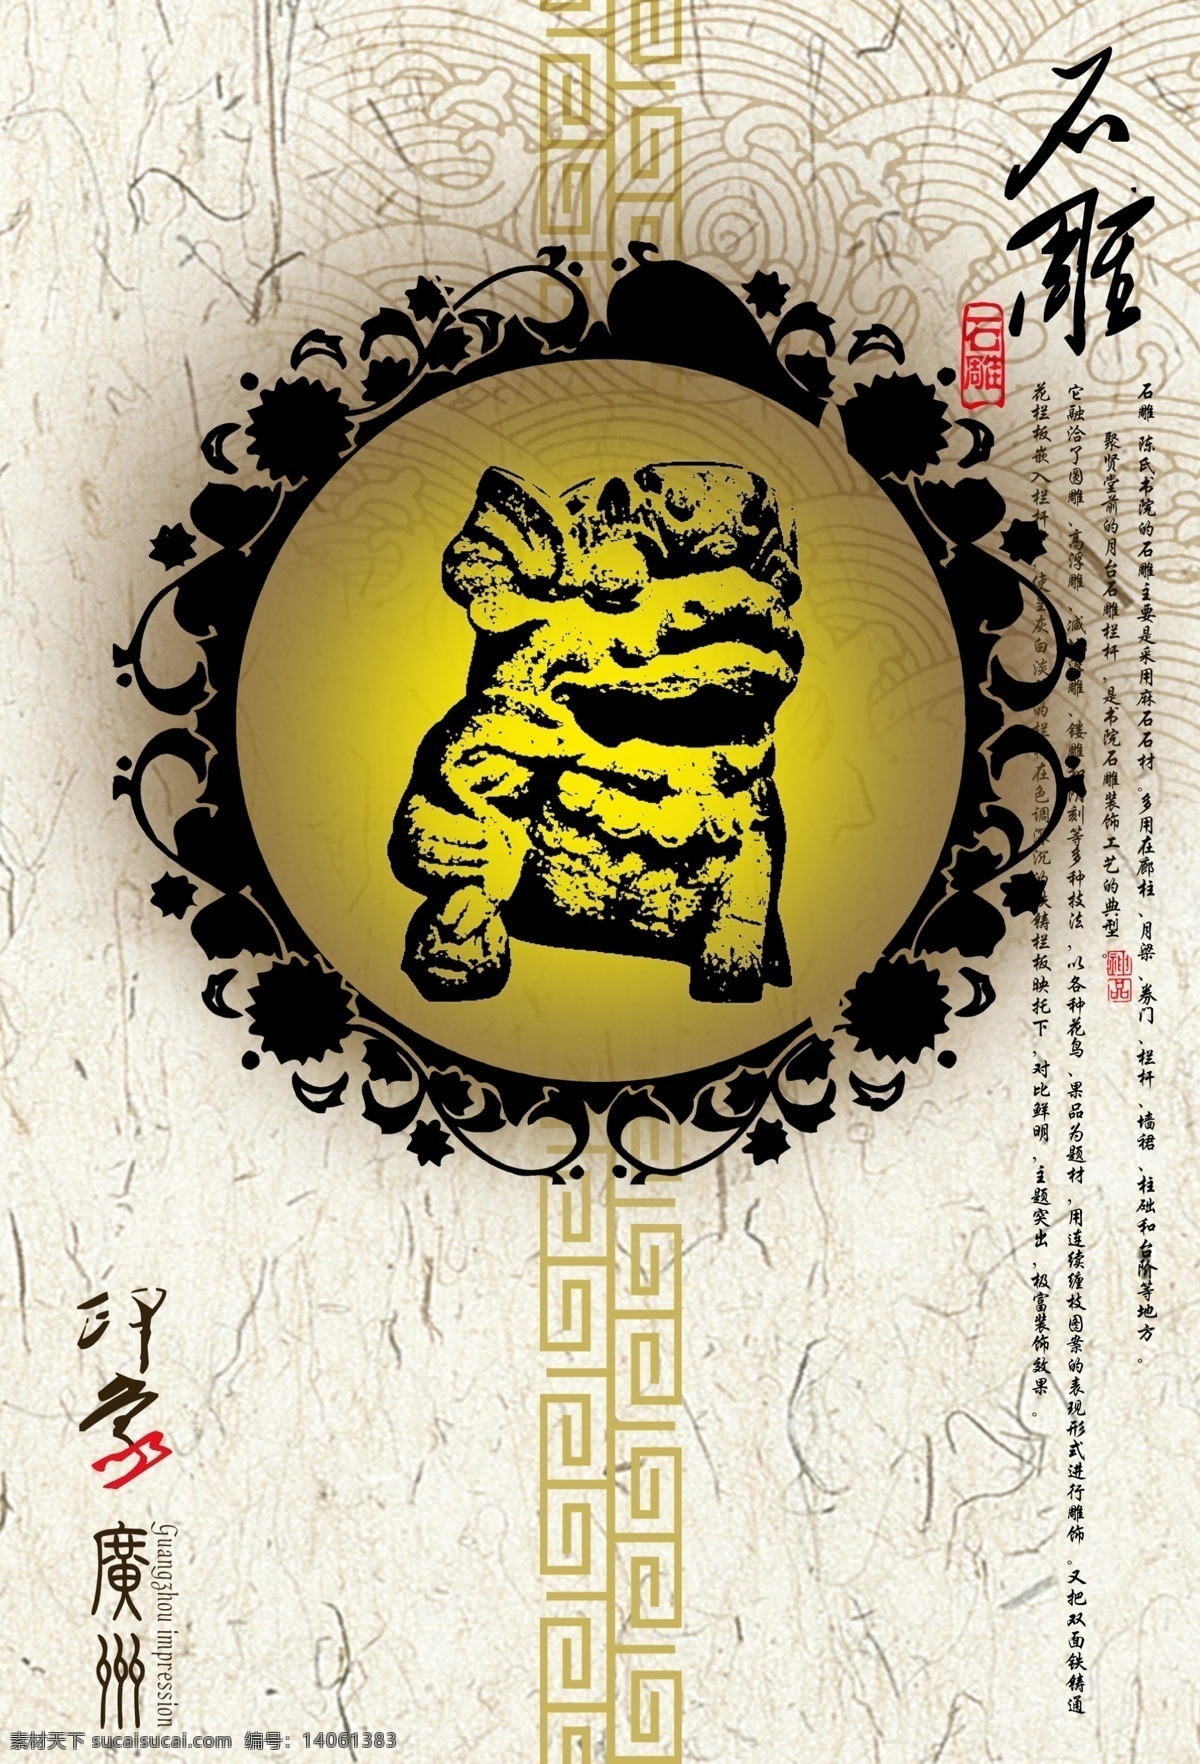 印象 广州 形象 主题 海报 文化 开放 大气 中国元素 石雕 广告形象 国内广告设计 广告设计模板 源文件